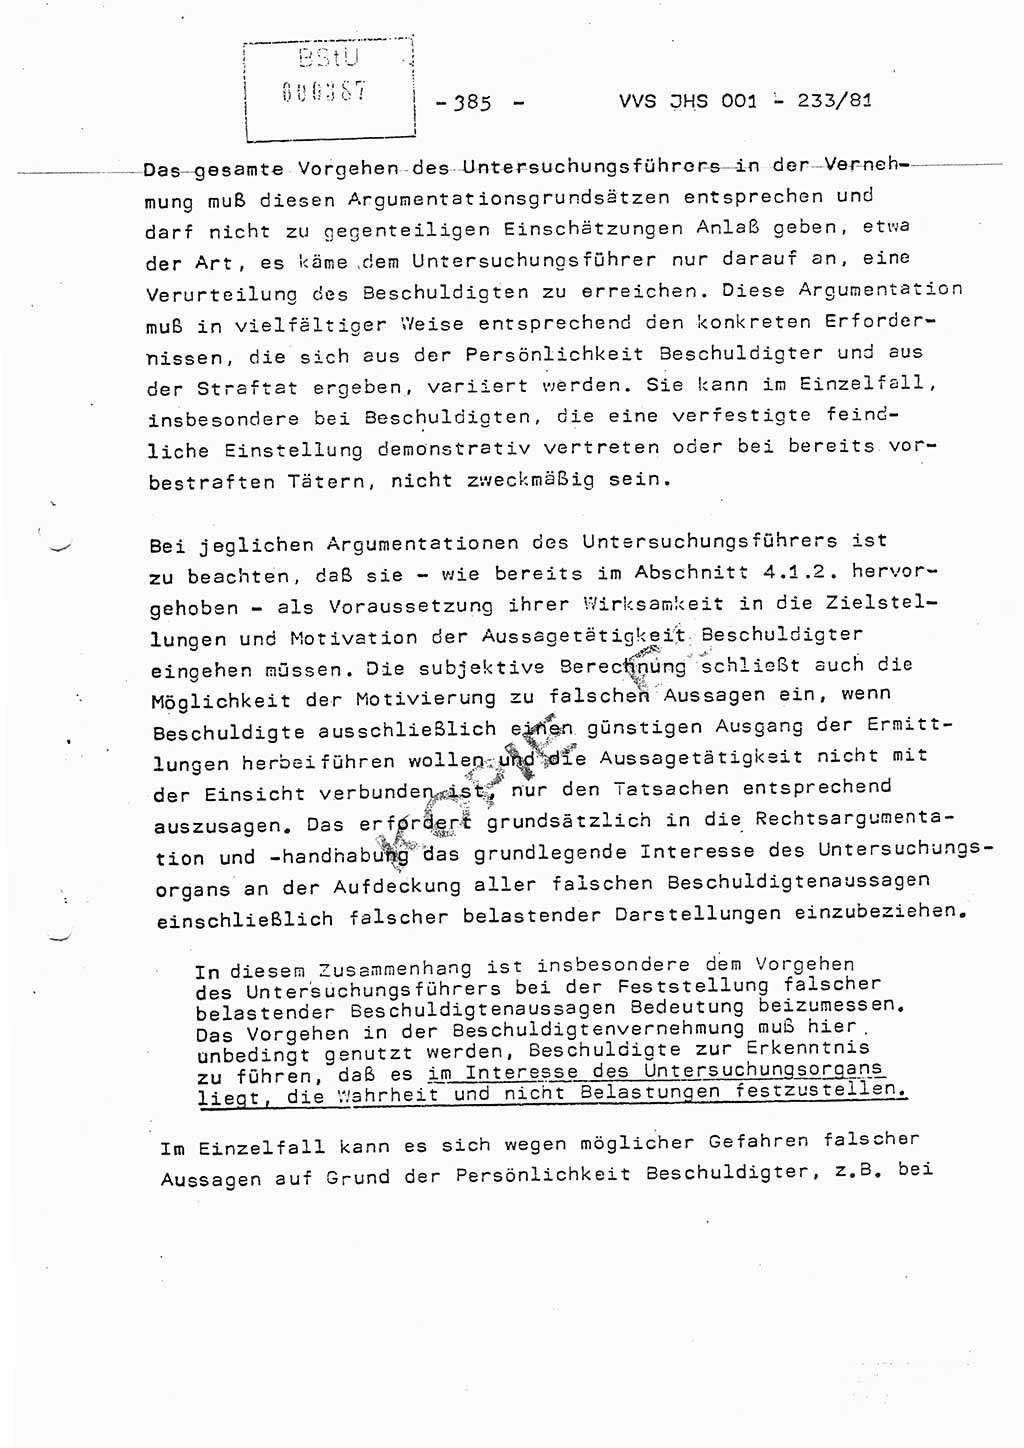 Dissertation Oberstleutnant Horst Zank (JHS), Oberstleutnant Dr. Karl-Heinz Knoblauch (JHS), Oberstleutnant Gustav-Adolf Kowalewski (HA Ⅸ), Oberstleutnant Wolfgang Plötner (HA Ⅸ), Ministerium für Staatssicherheit (MfS) [Deutsche Demokratische Republik (DDR)], Juristische Hochschule (JHS), Vertrauliche Verschlußsache (VVS) o001-233/81, Potsdam 1981, Blatt 385 (Diss. MfS DDR JHS VVS o001-233/81 1981, Bl. 385)